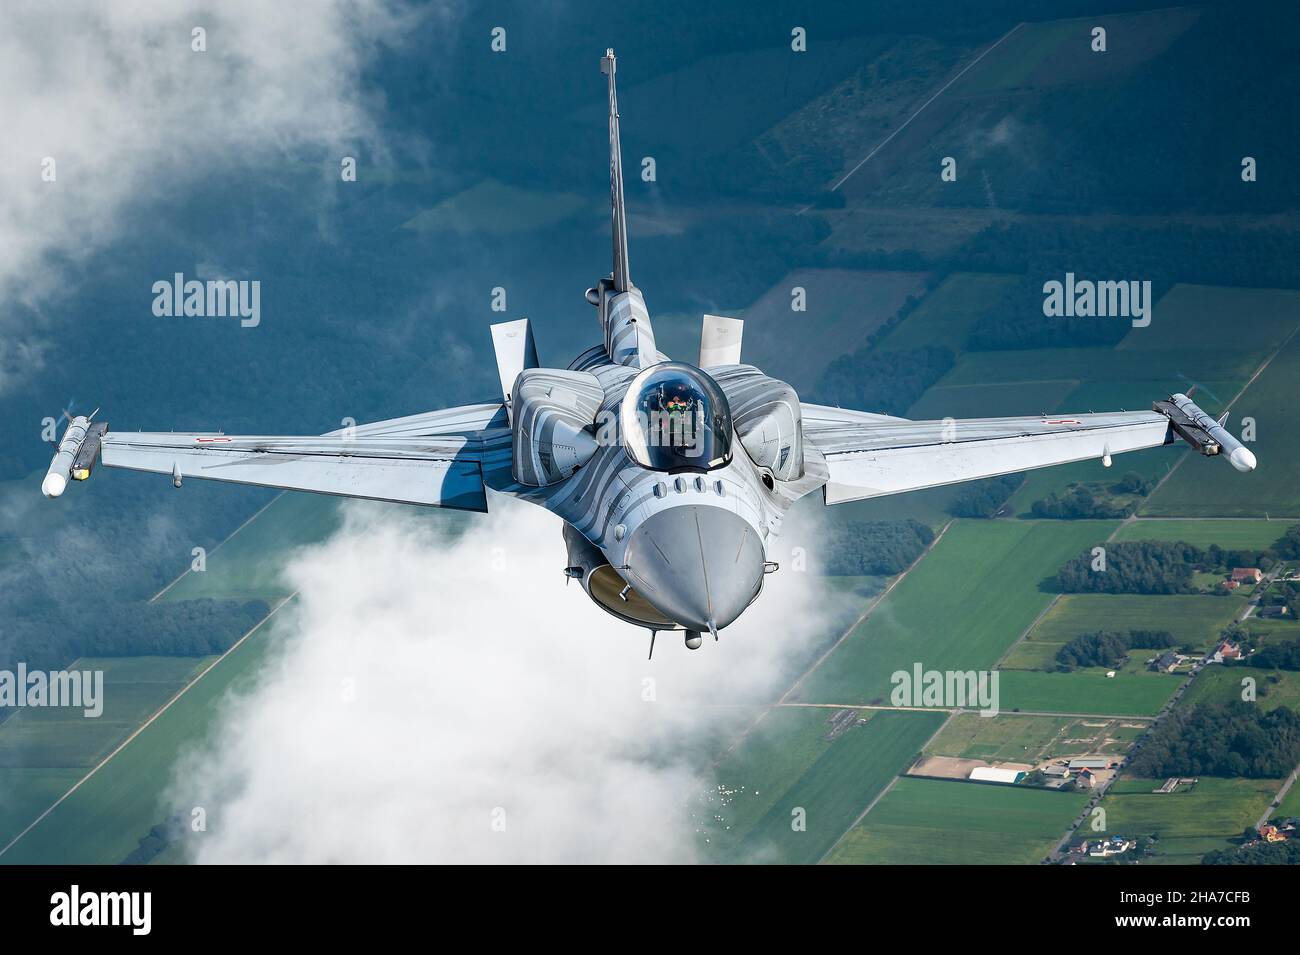 Un avion de chasse F-16 Faucon de combat de la base aérienne tactique de 31st de l'Armée de l'air polonaise. Banque D'Images